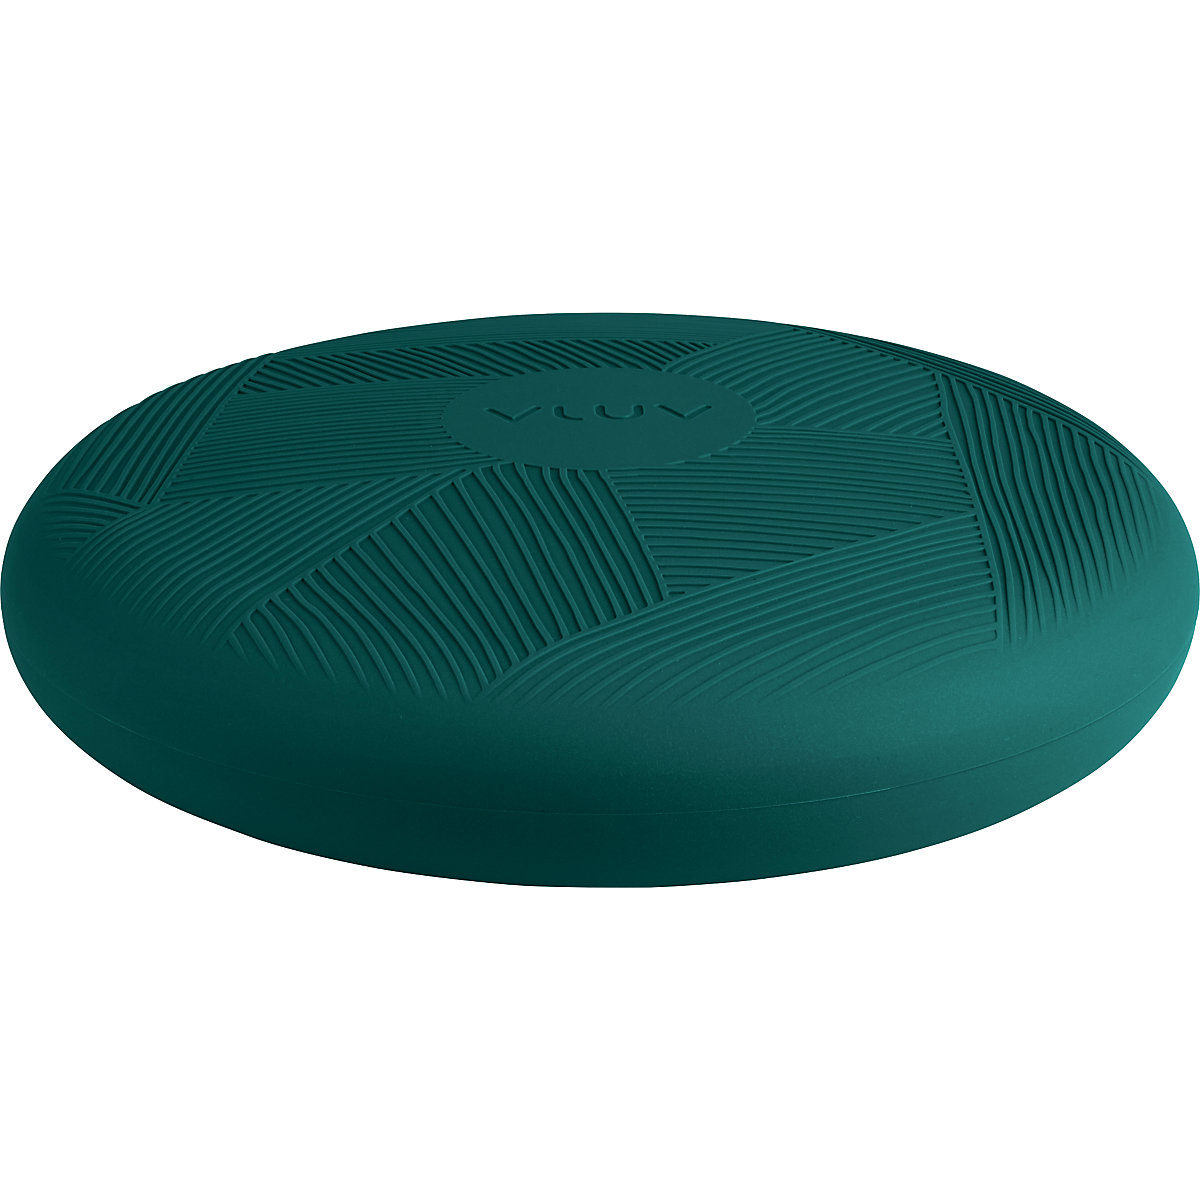 PED balance cushion – VLUV, made of PVC, Ø 360 mm, blue green